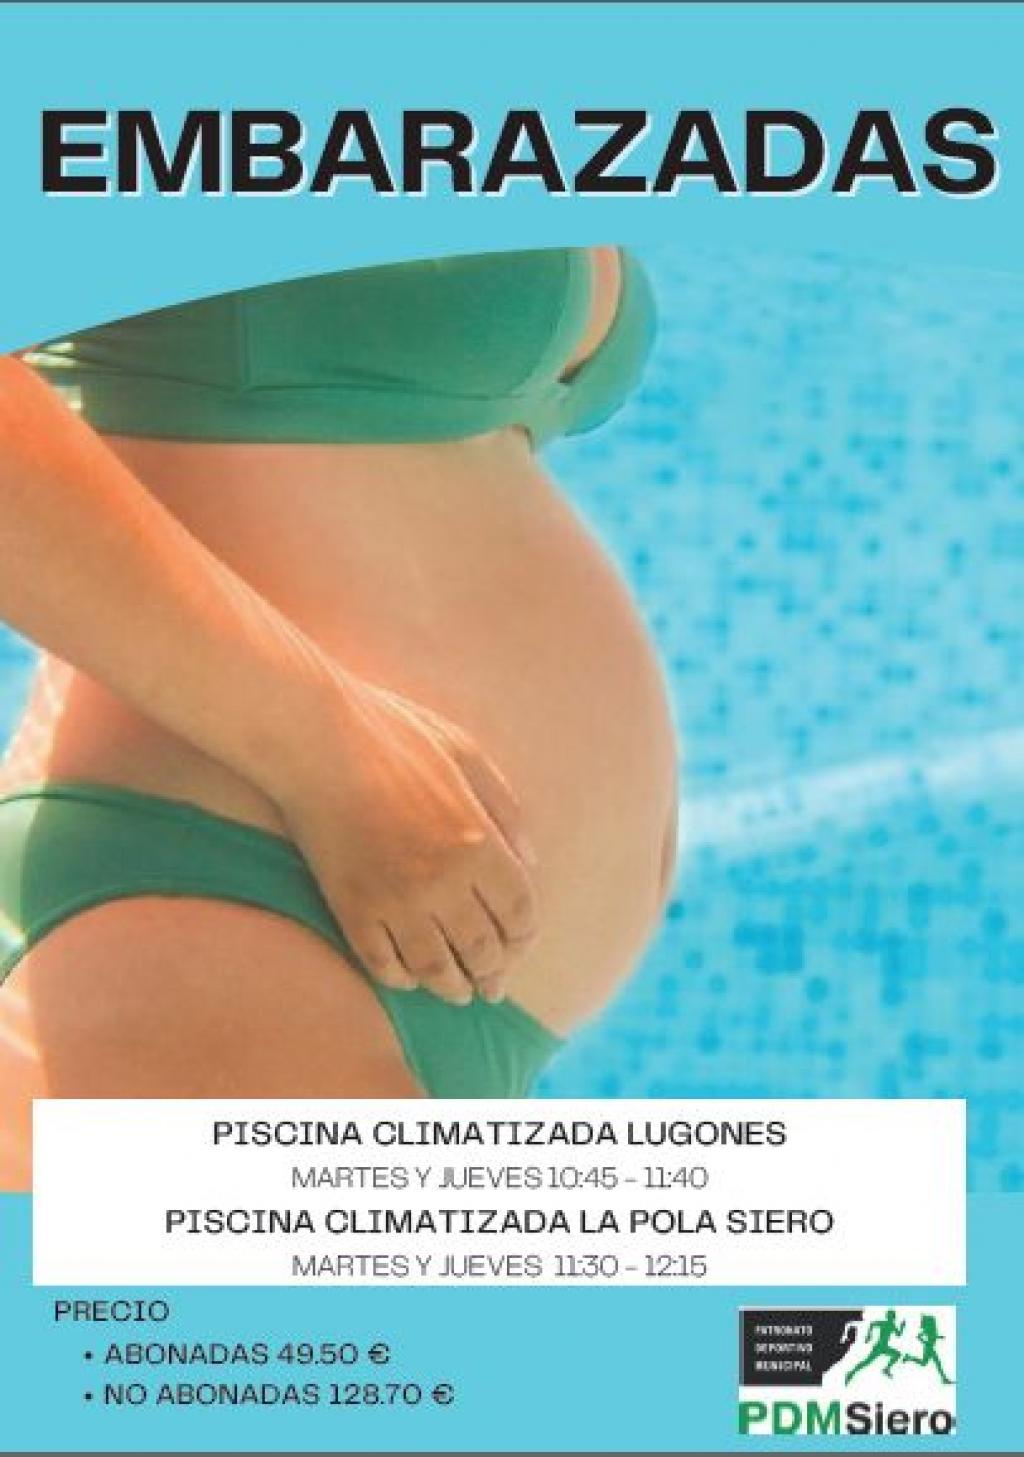 El Tapin - Cursillos para mujeres embarazadas en las piscinas climatizadas de Siero